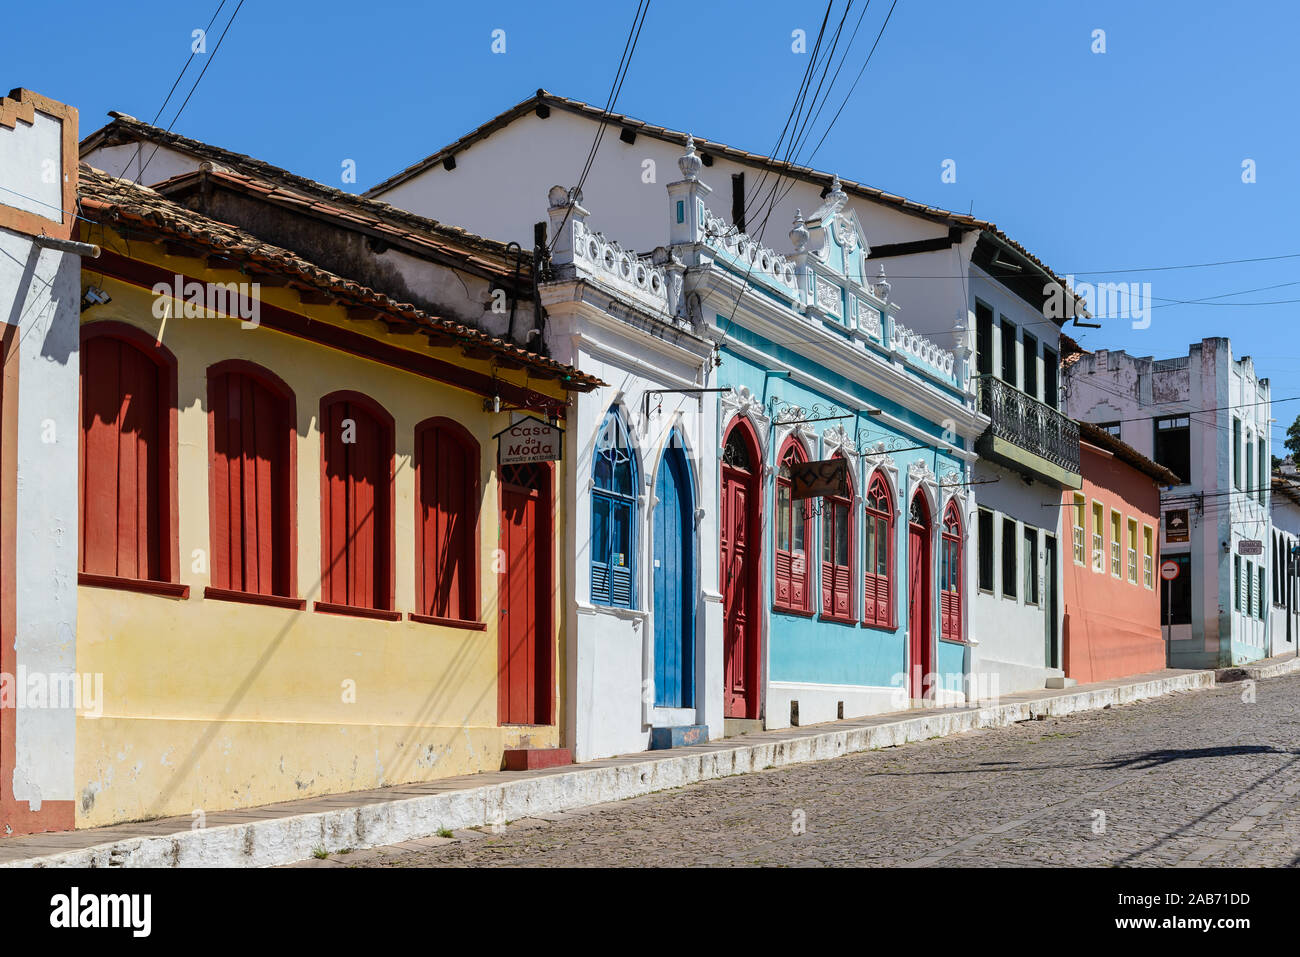 Bâtiment peintes de couleurs vives le long des rues dans une petite ville de Lençois, Bahia, Brésil. Banque D'Images